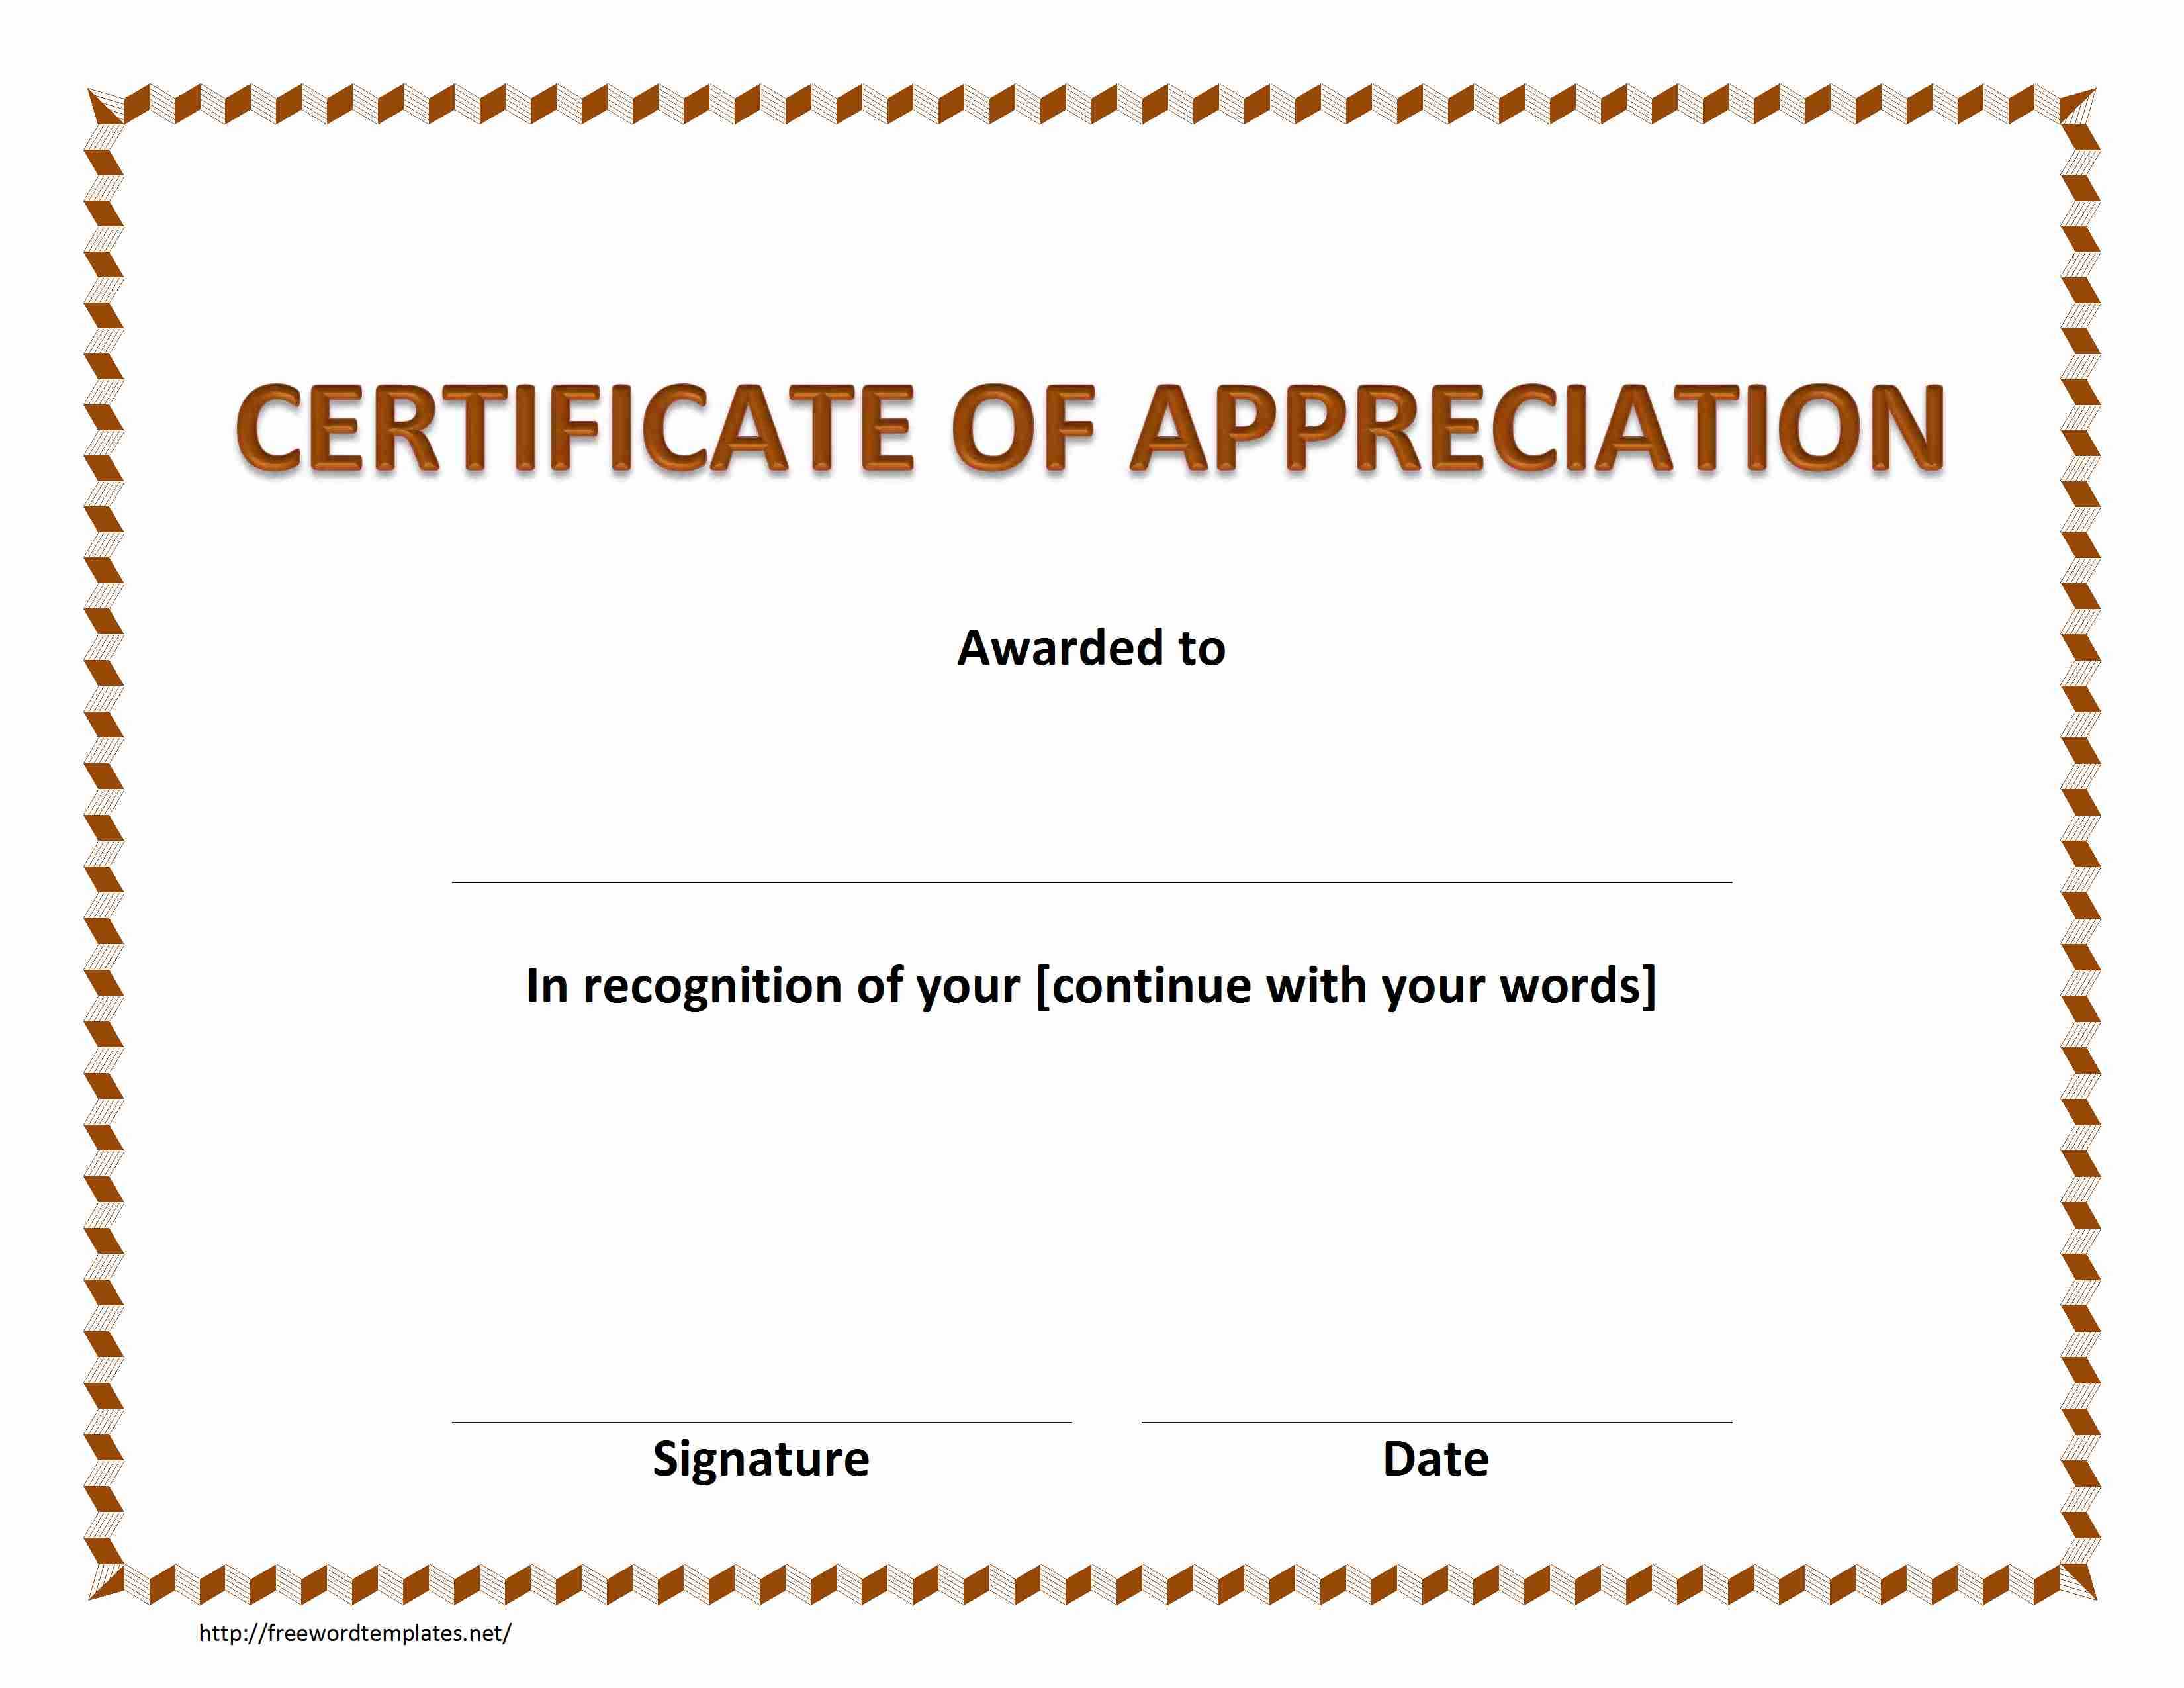 Certificate Of Appreciation In Certificate Appreciation In Template For Certificate Of Appreciation In Microsoft Word